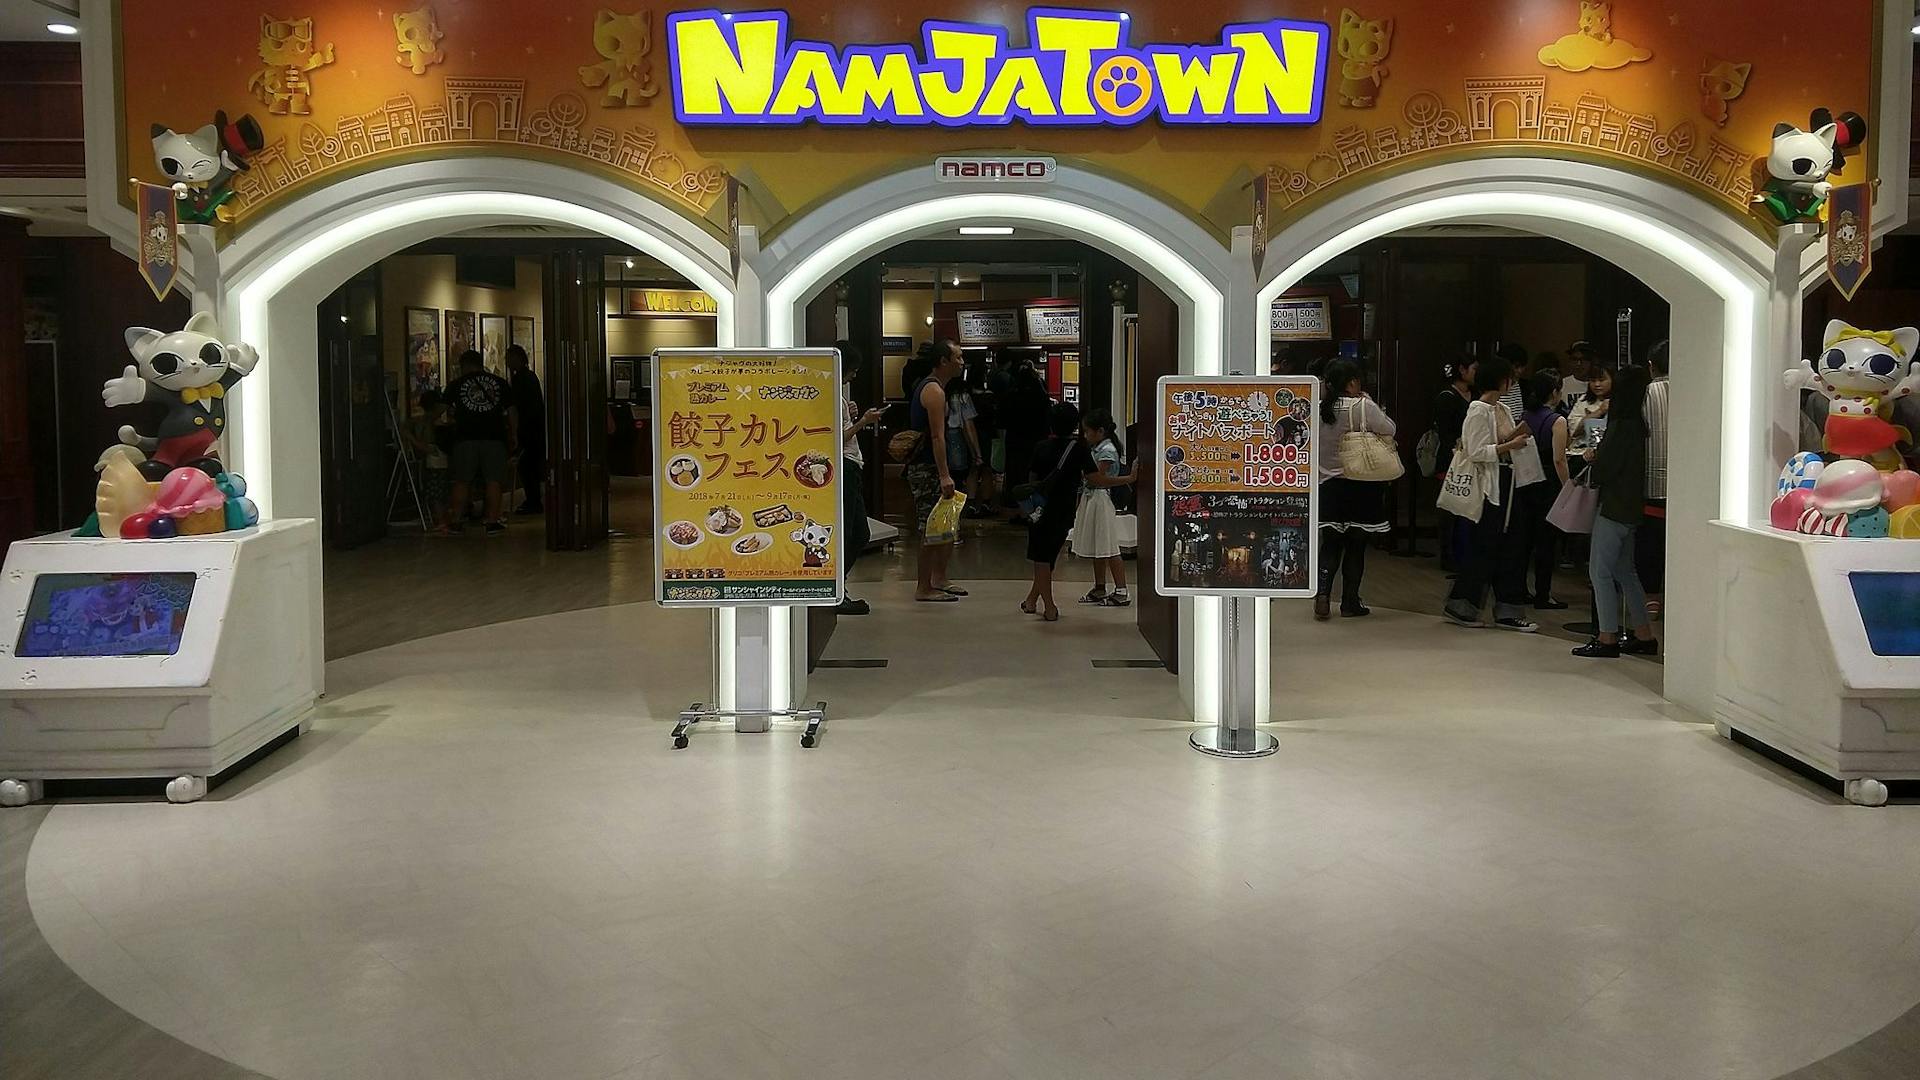 Namco Namja Town